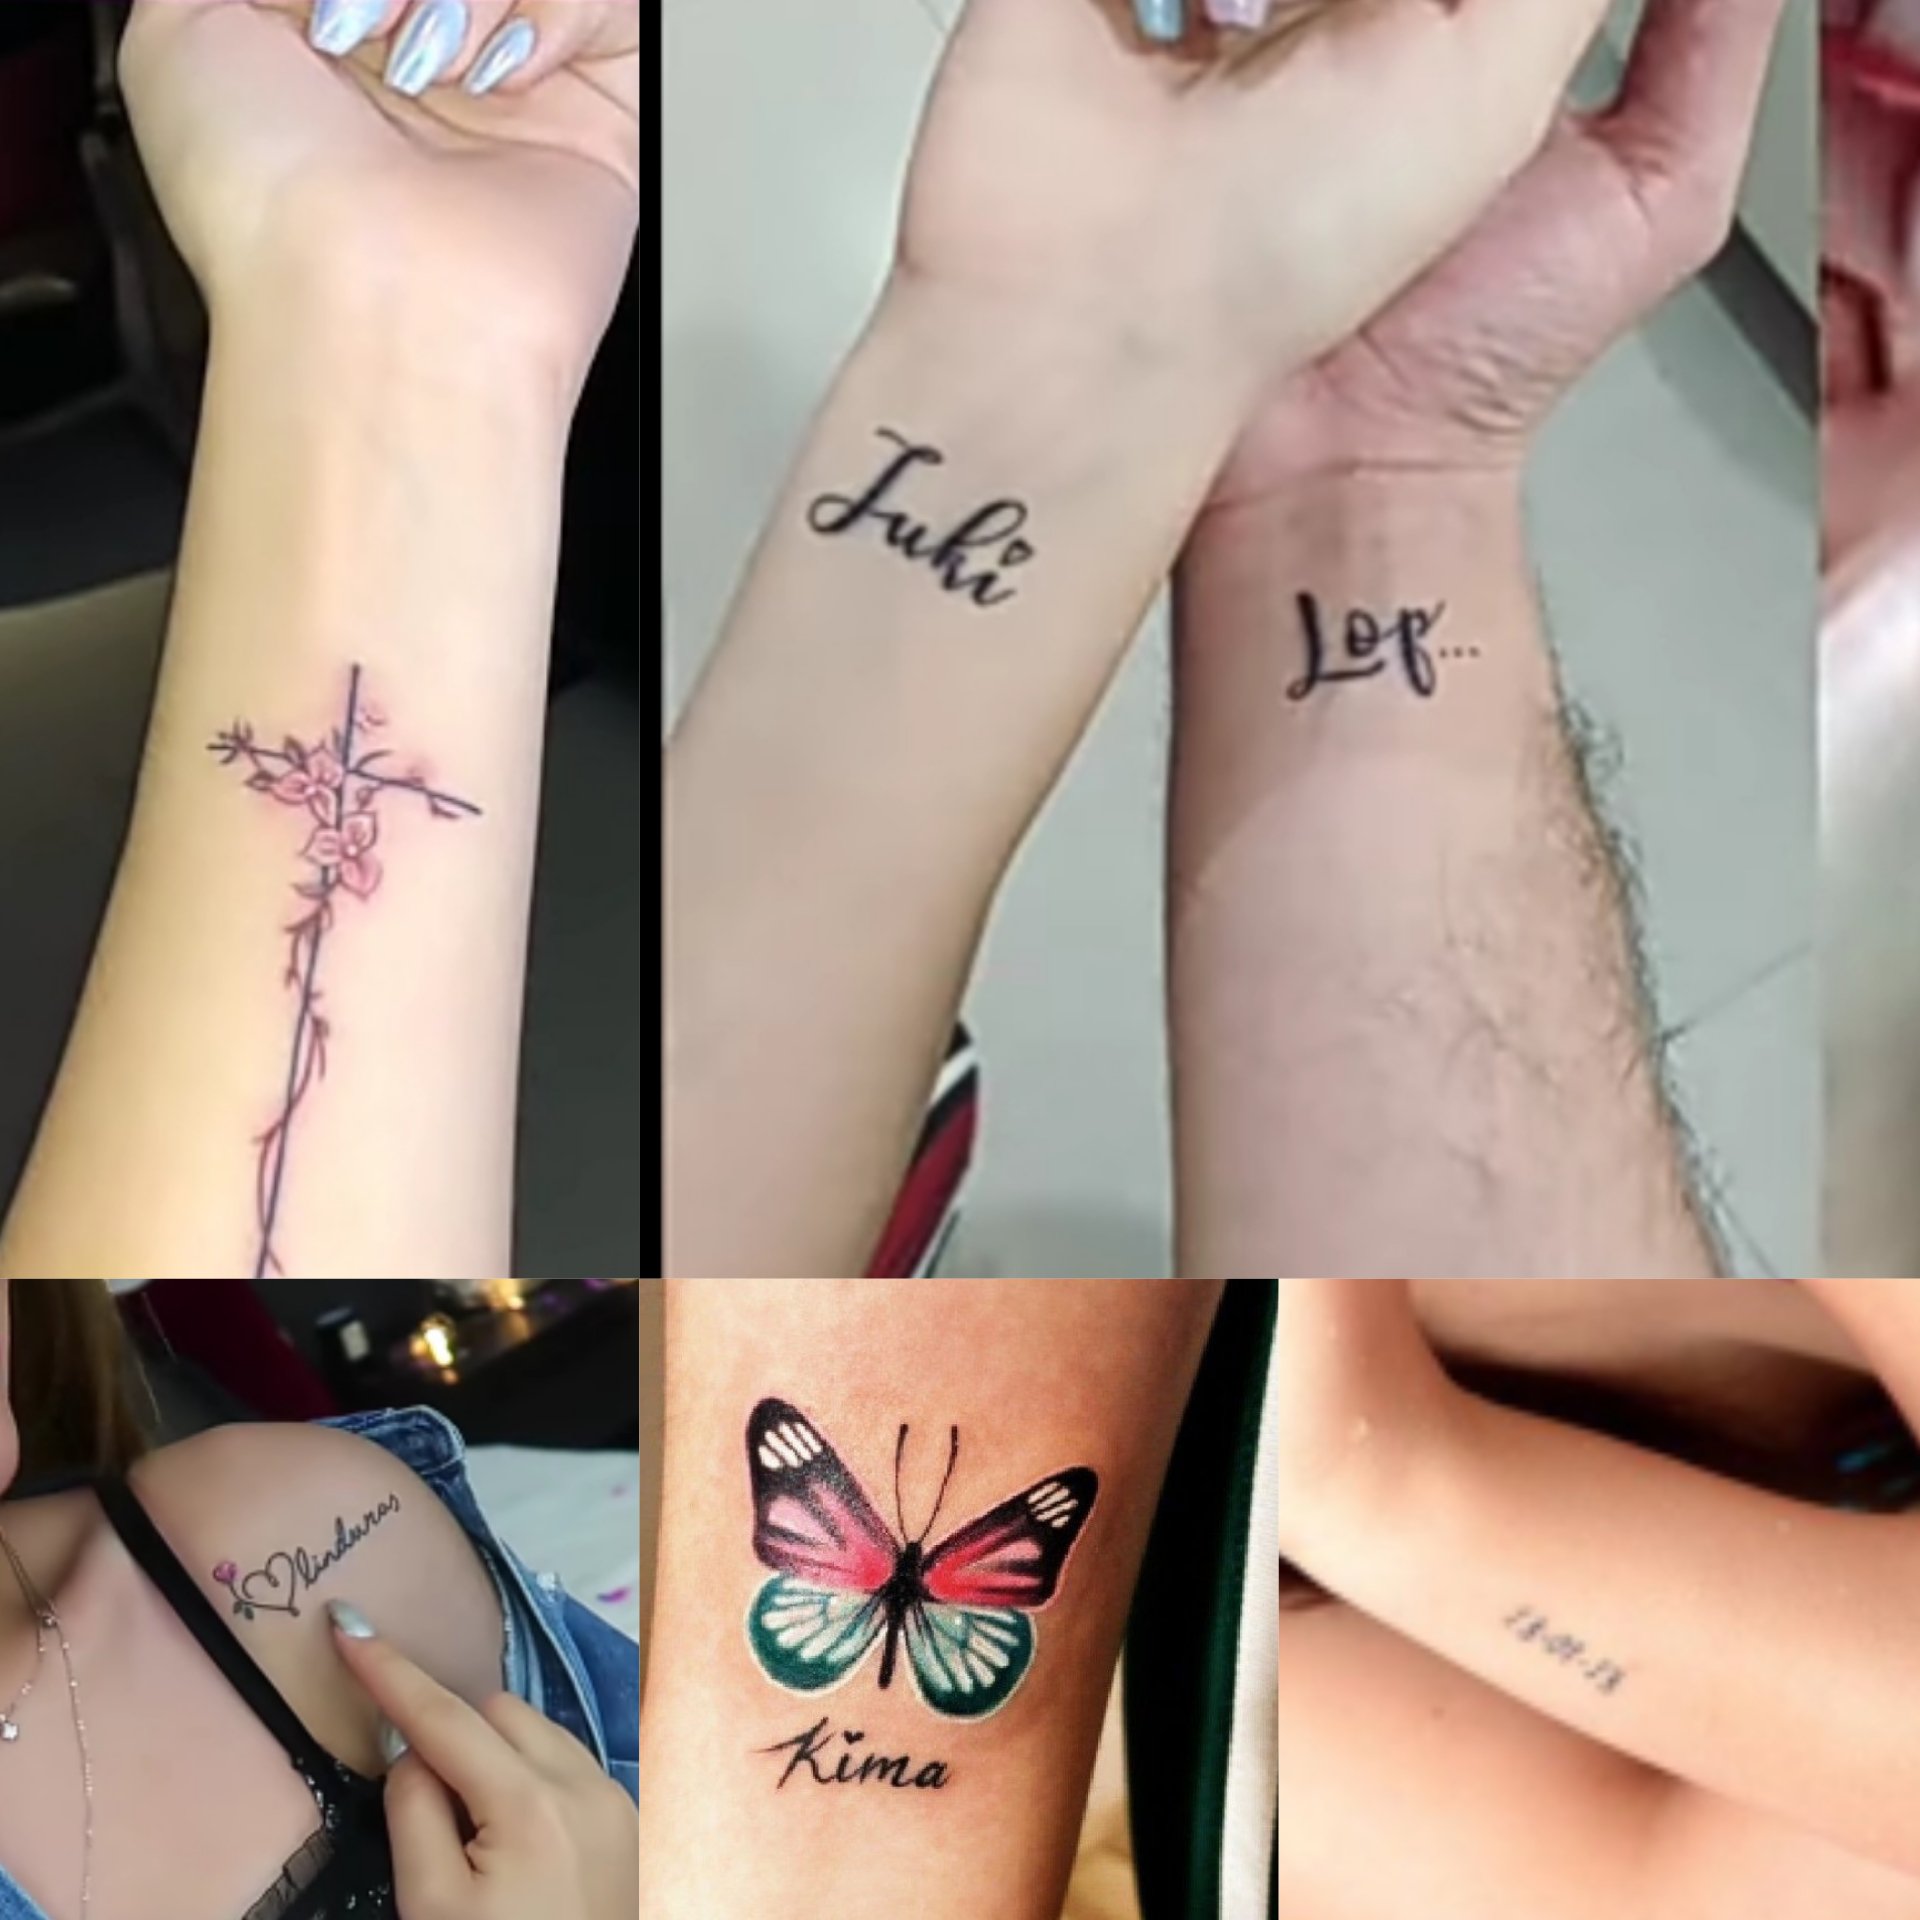 Vane García ⚖️🖤 on X: Un lindo dia para recordar los tatuajes de kimberly  loaiza 🔥 t.colN8VsRr2xl  X